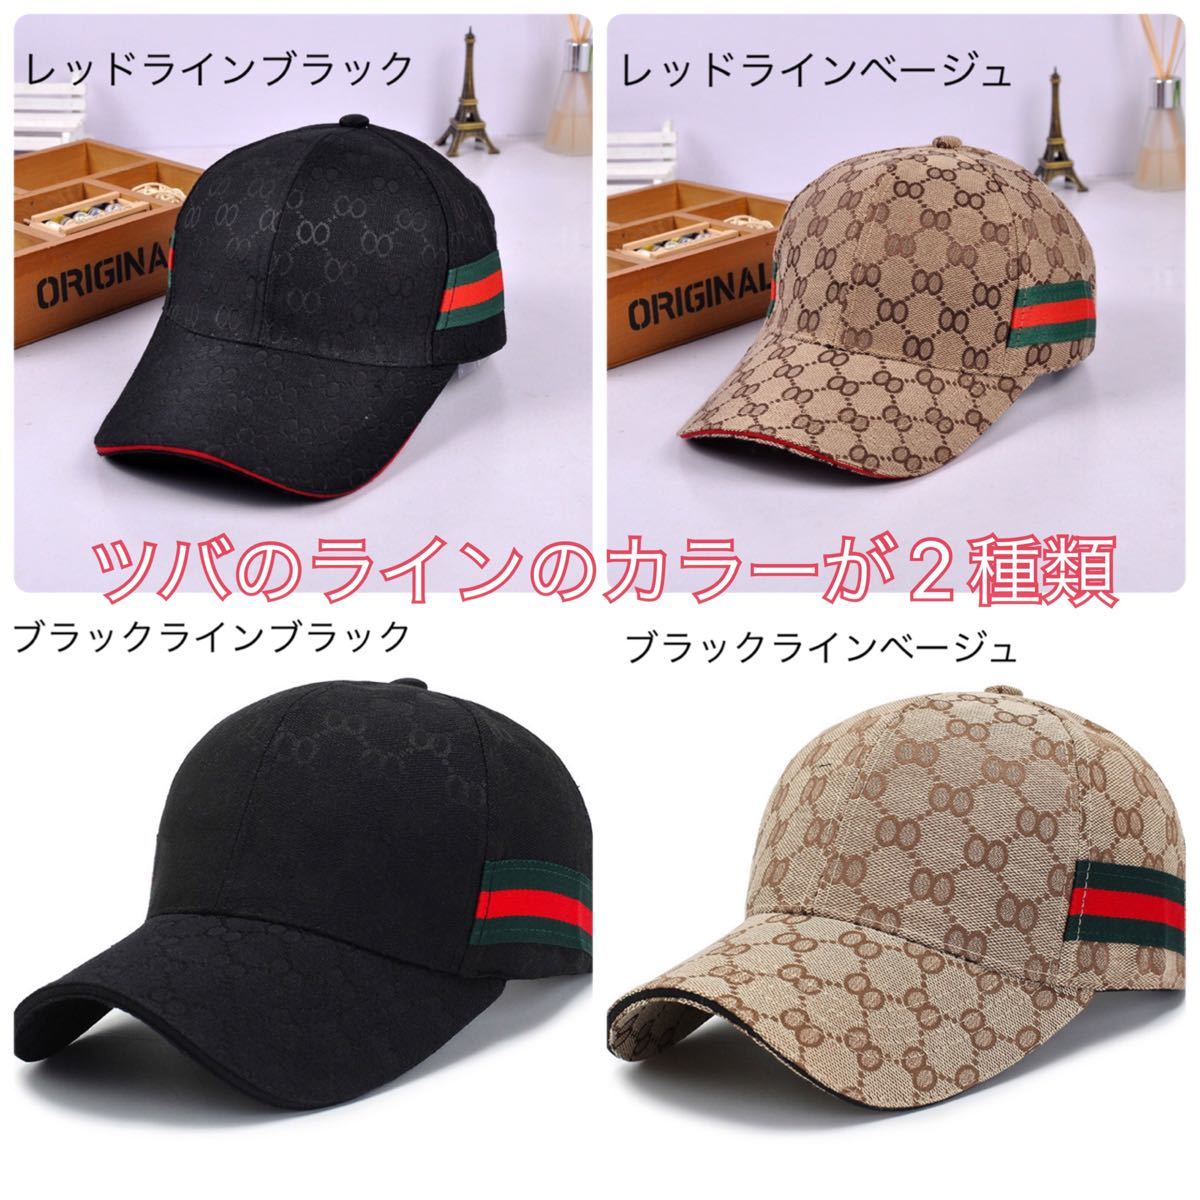 キャップ  メンズ レディース 韓国 メッシュ 黒 ベージュ ノーブランド 帽子 キャップ帽子